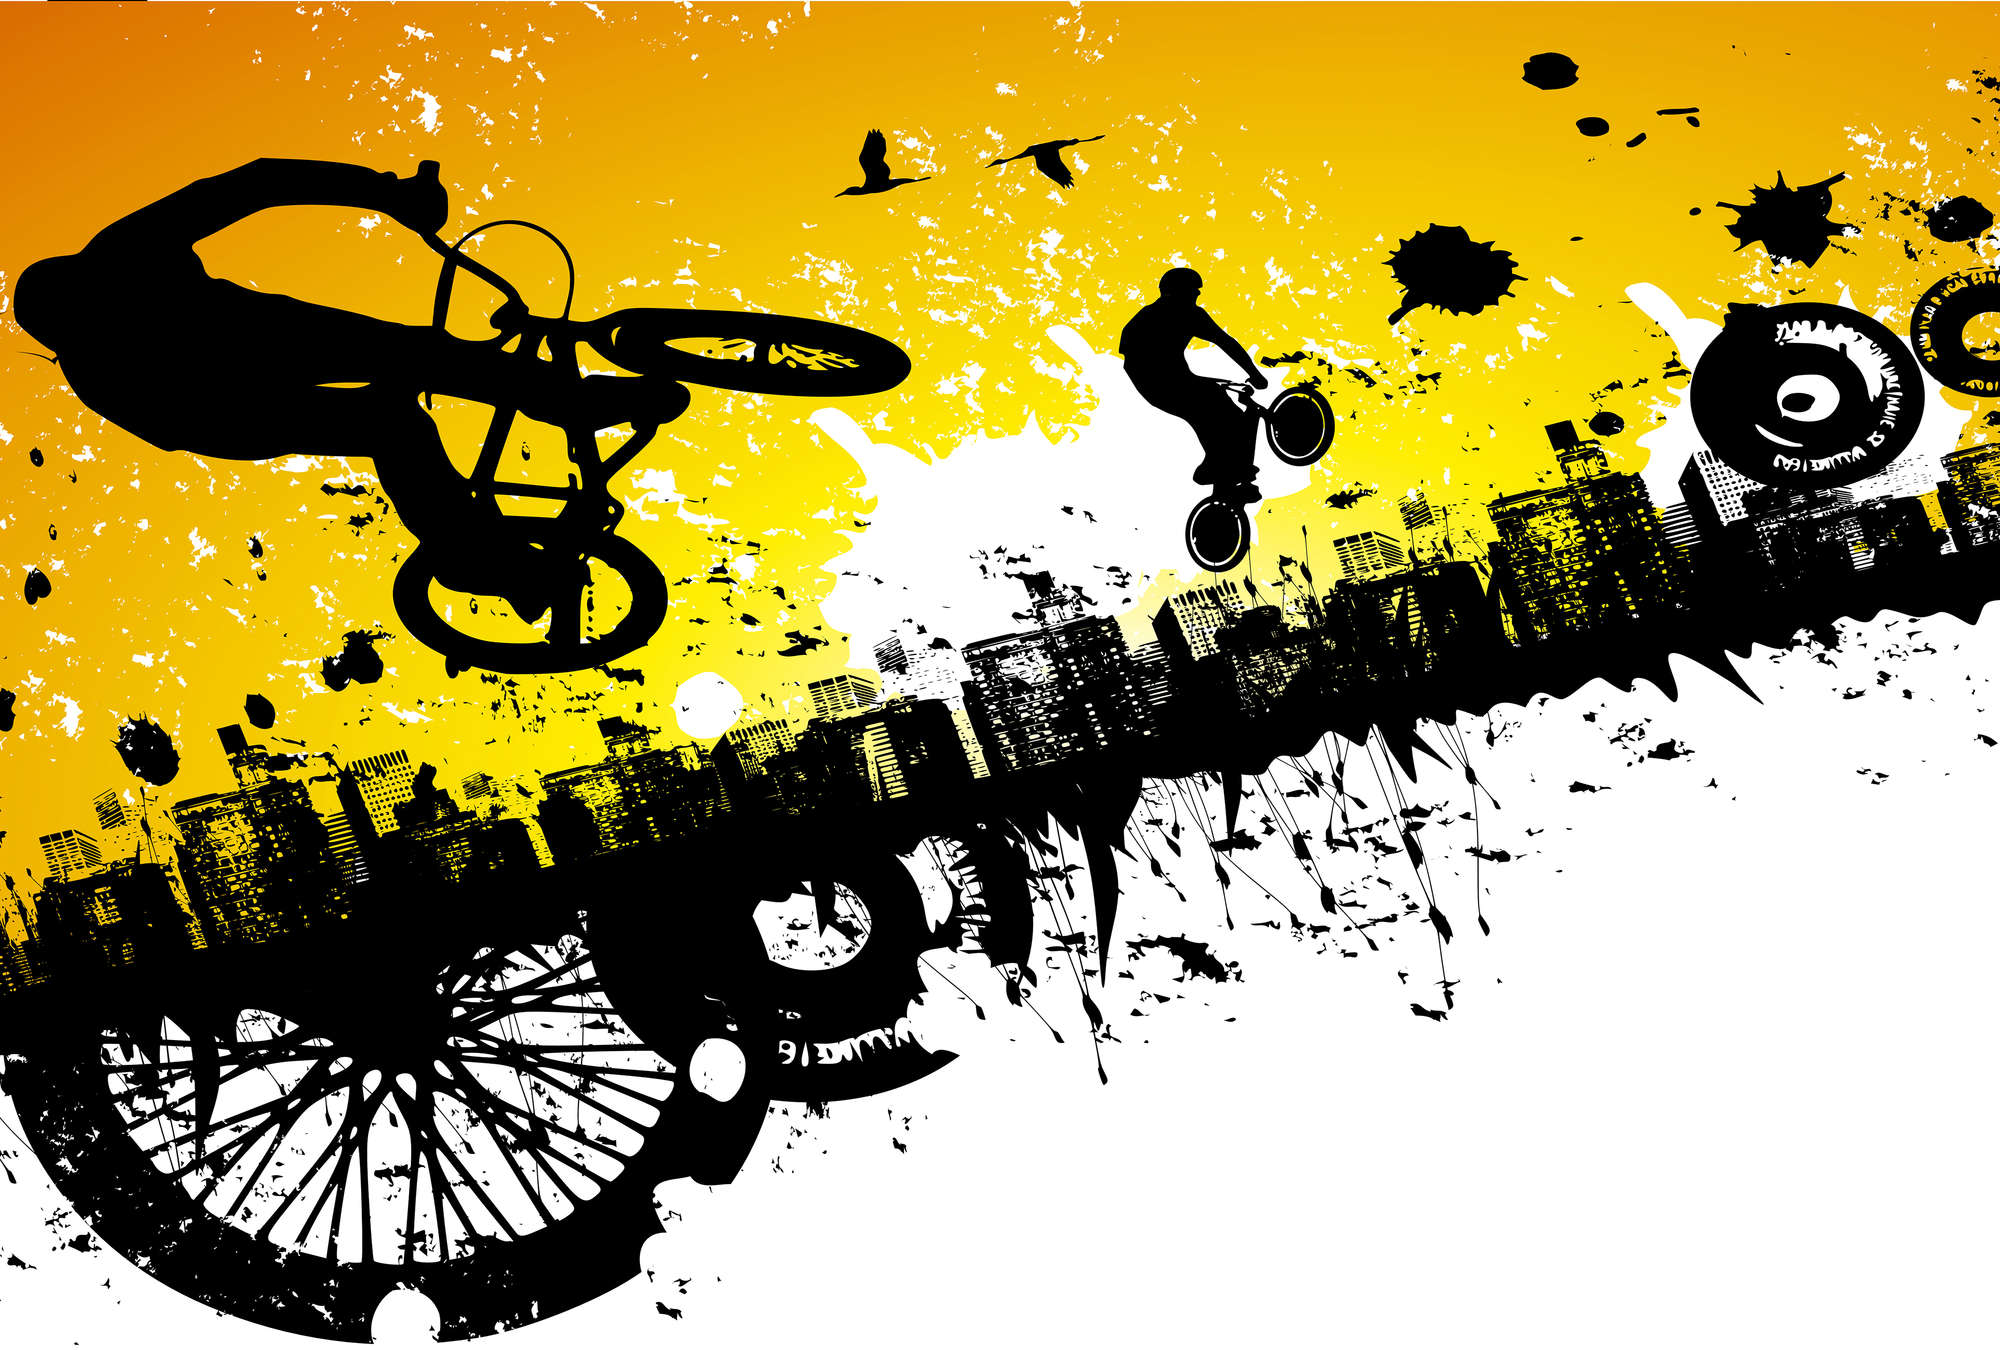             Graffiti Behang BMX Rider met Skyline op structuurvinyl
        